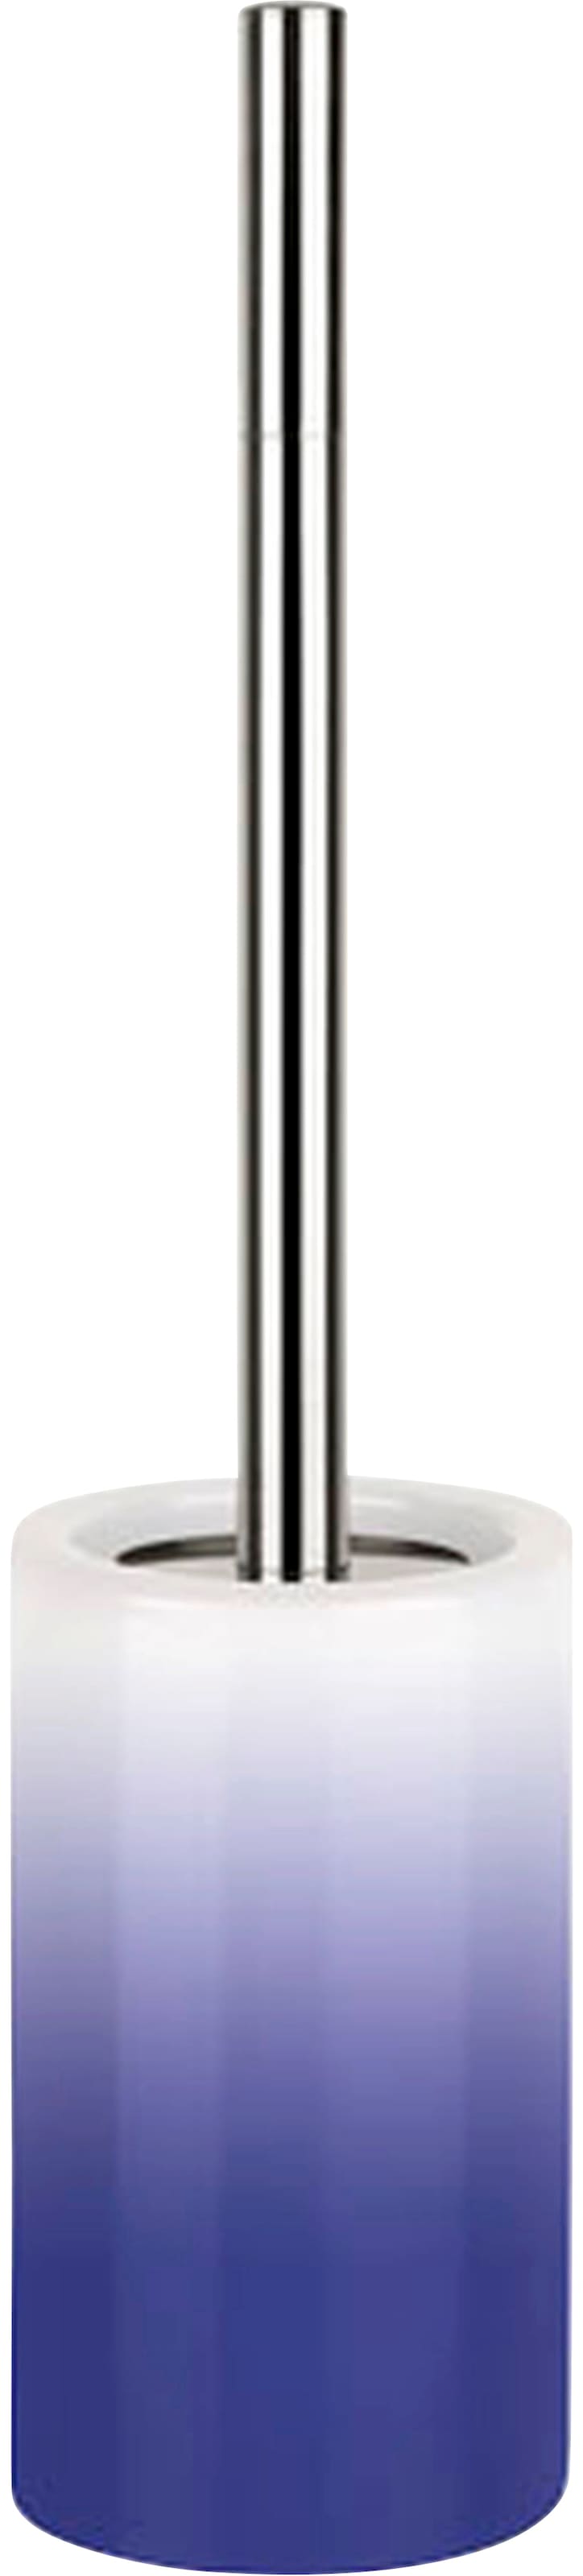 spirella WC-Garnitur »TUBE Gradient«, aus Keramik-Kunststoff-Edelstahl, Toilettenbürste Hochwertig mit hygienischem Behälter